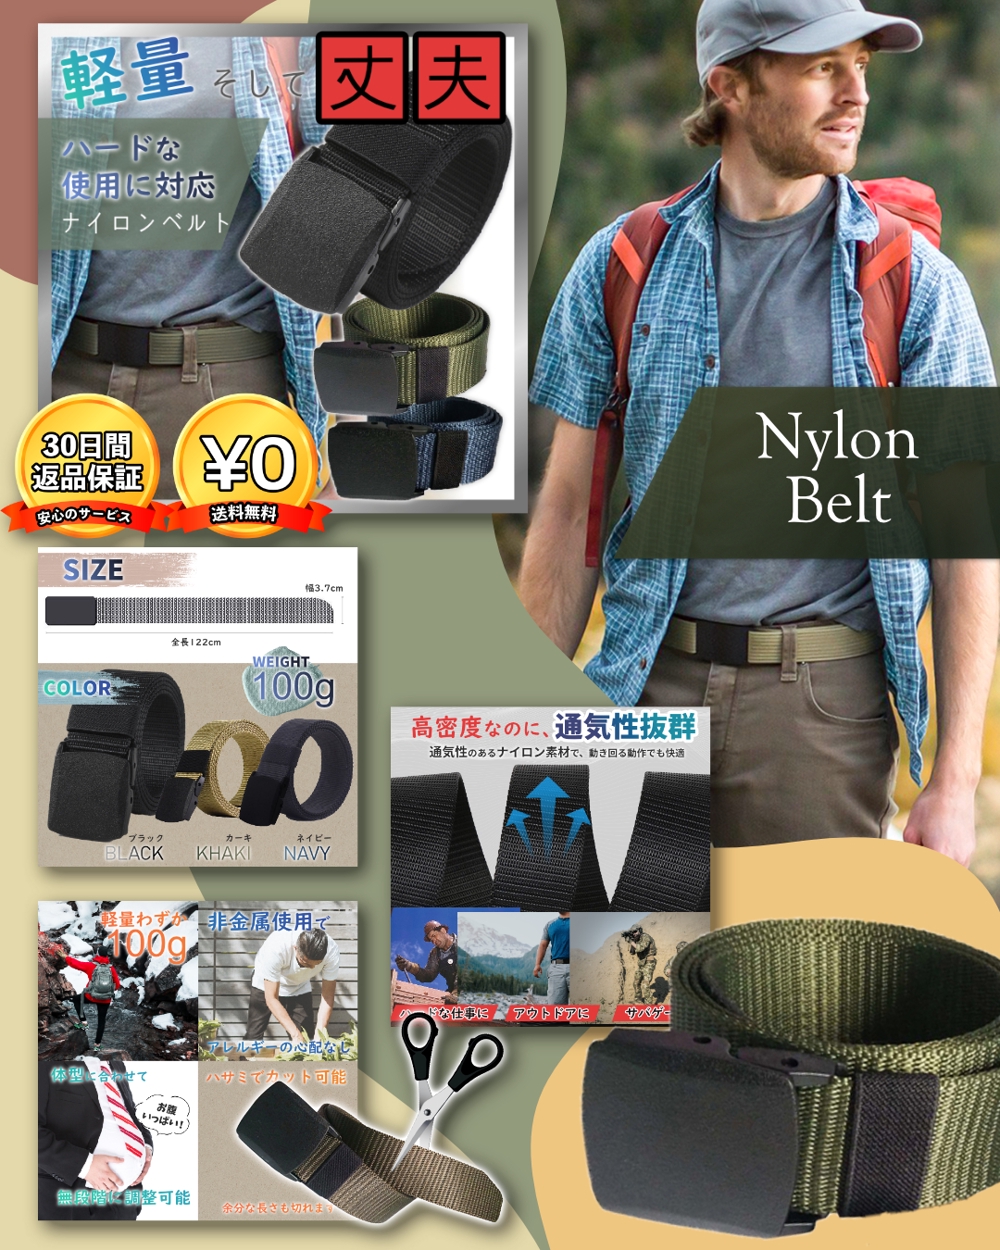 Nylon Belt Product Listing for Rakuten Ichiba